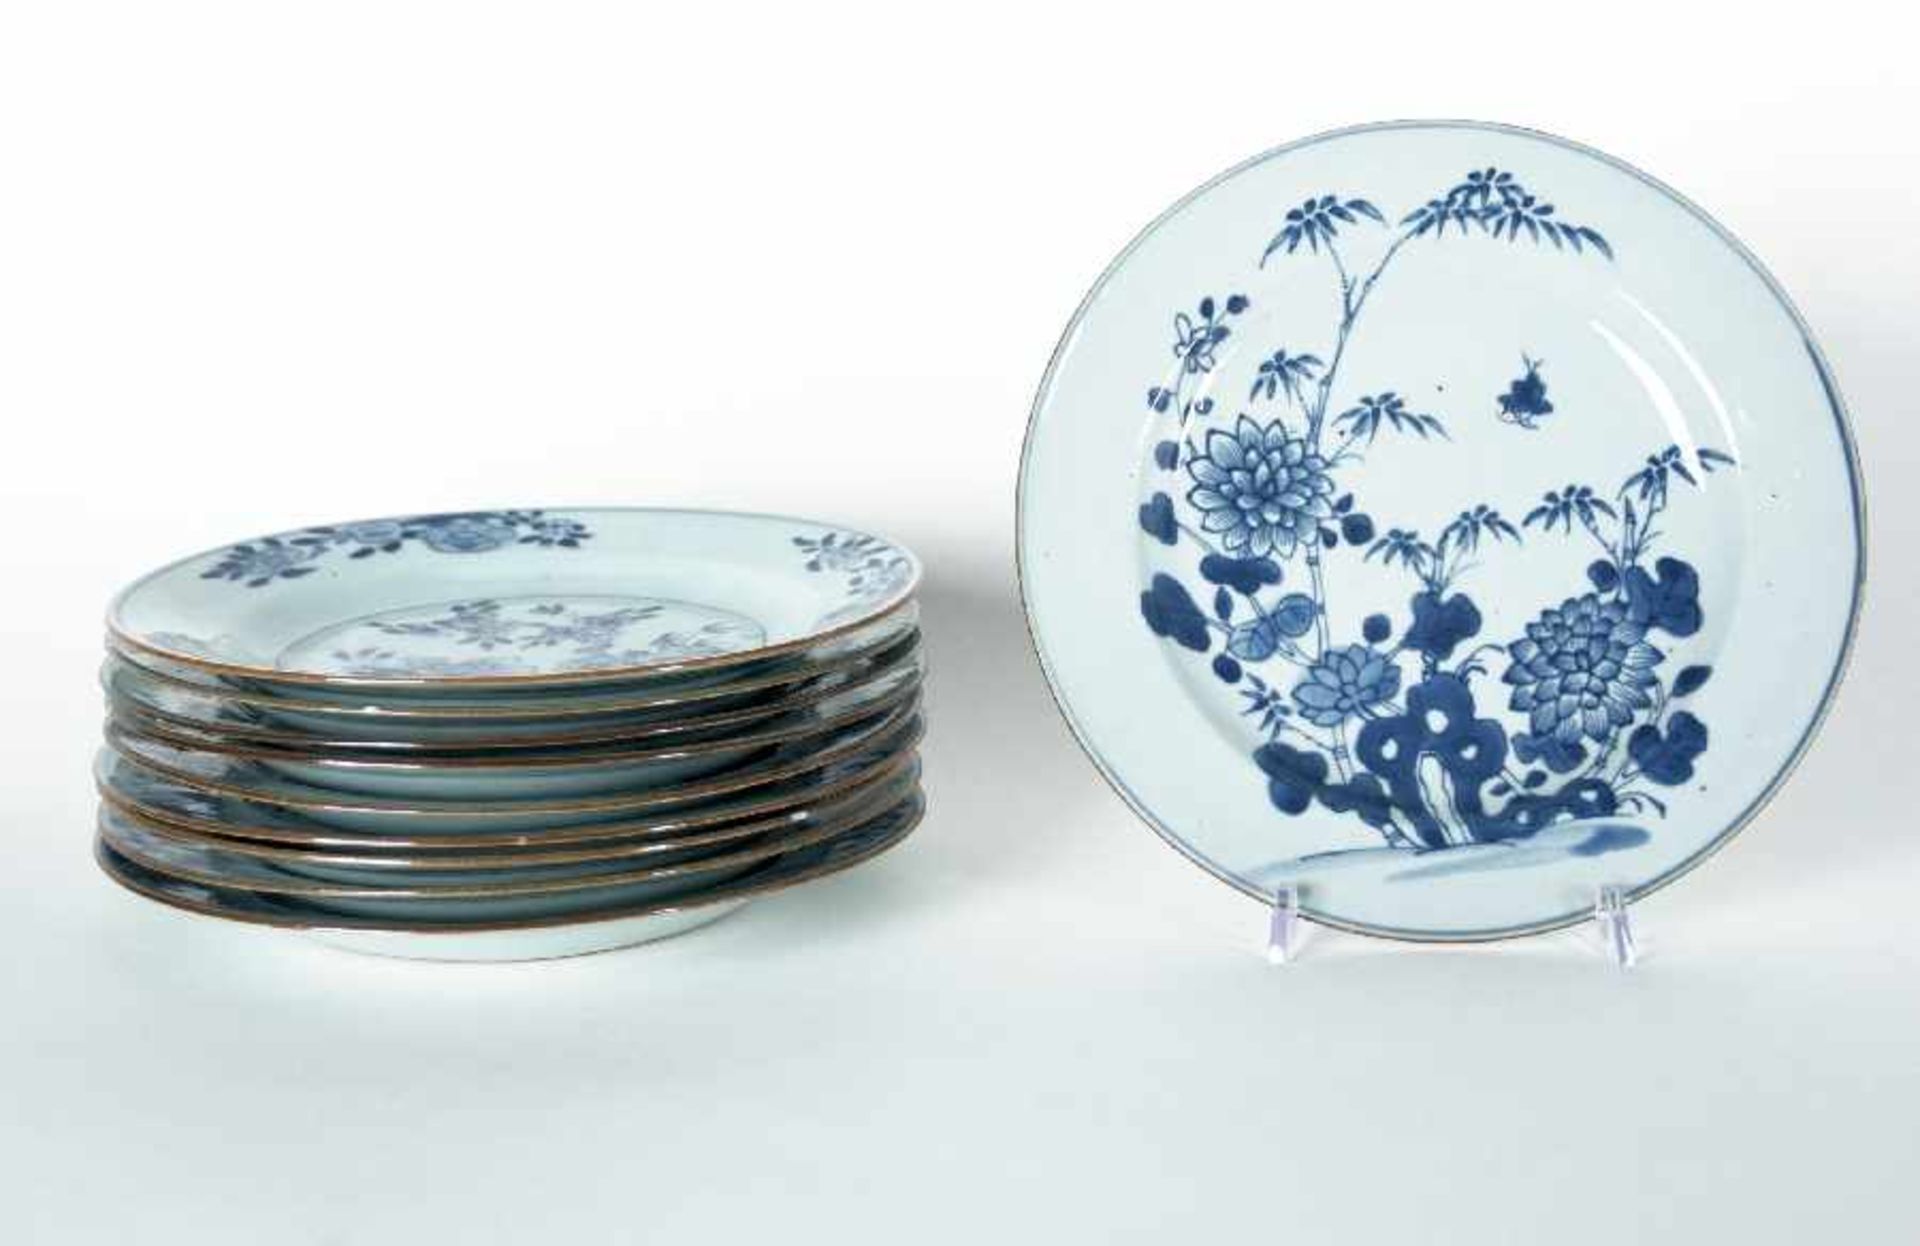 China, wohl 18. Jh.10 Teller mit floralen MotivenPorzellan mit Unterglasurmalerei in Blau und Weiß